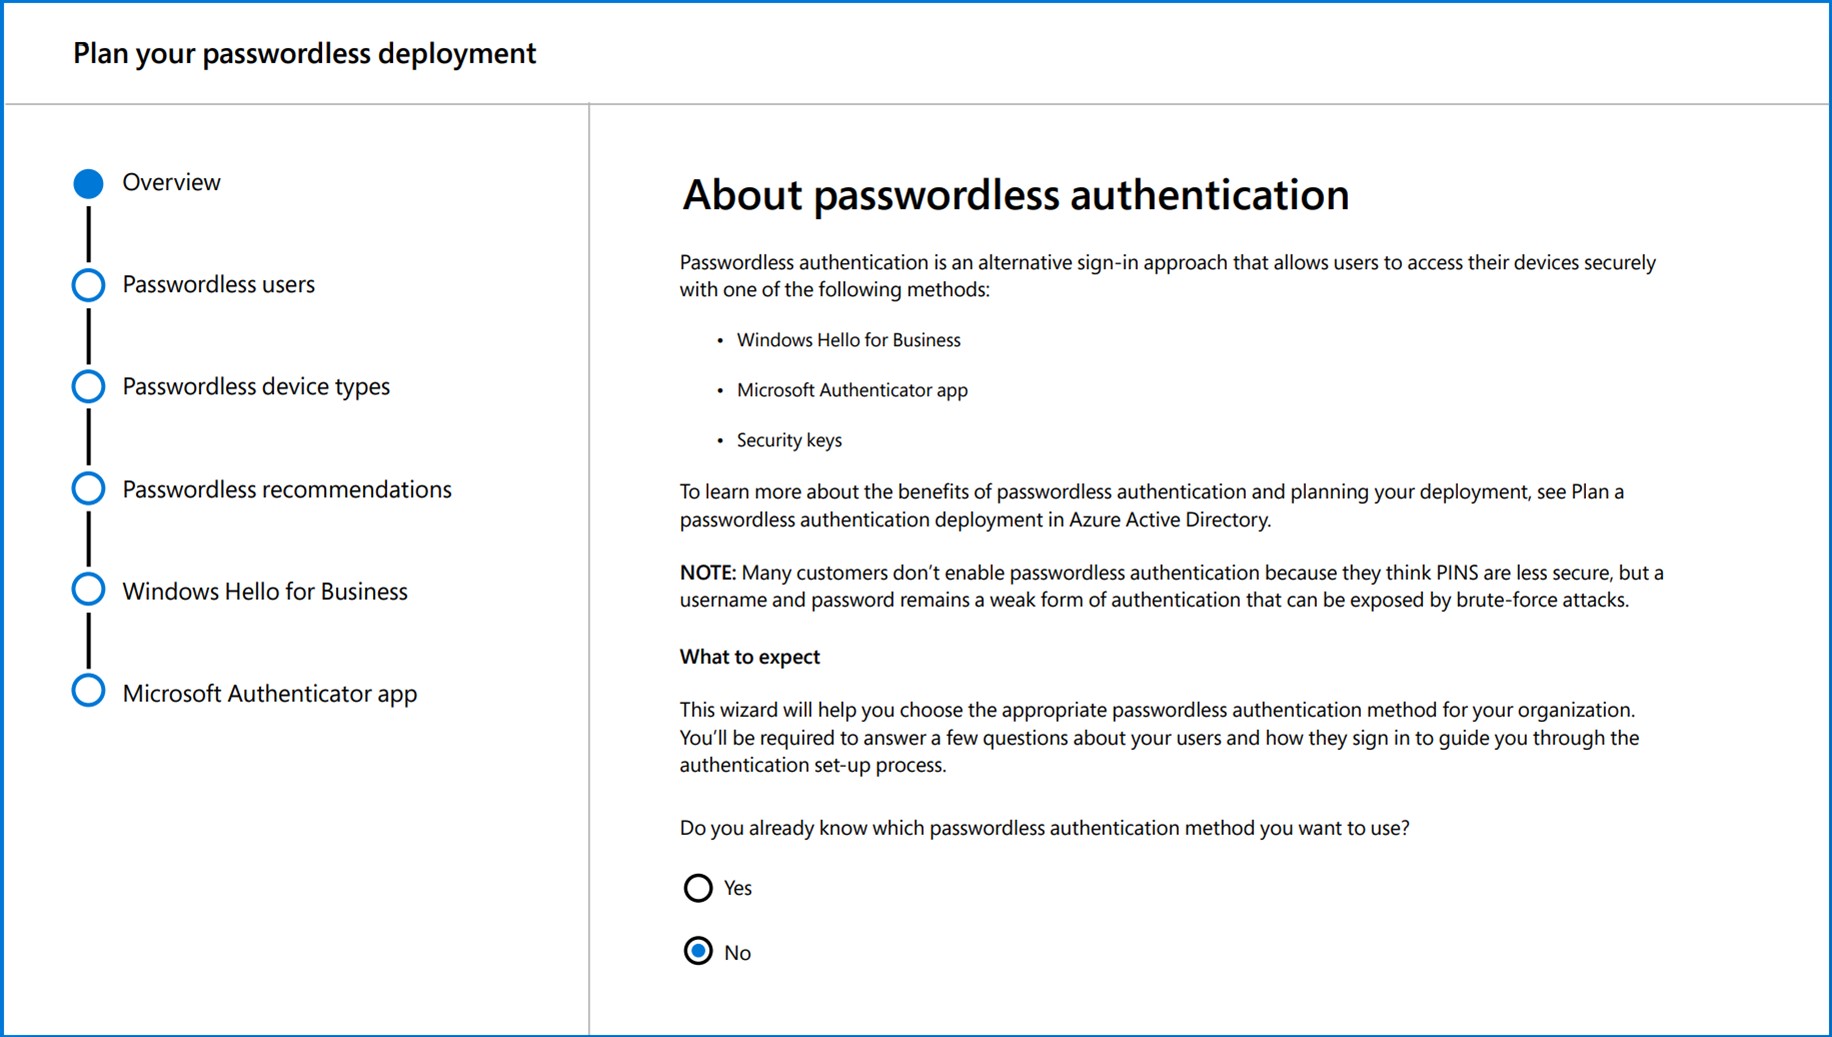 パスワード認証のサインイン方法には、Windows Hello for Business、Microsoft Authenticator アプリ、およびセキュリティ キーが含まれます。